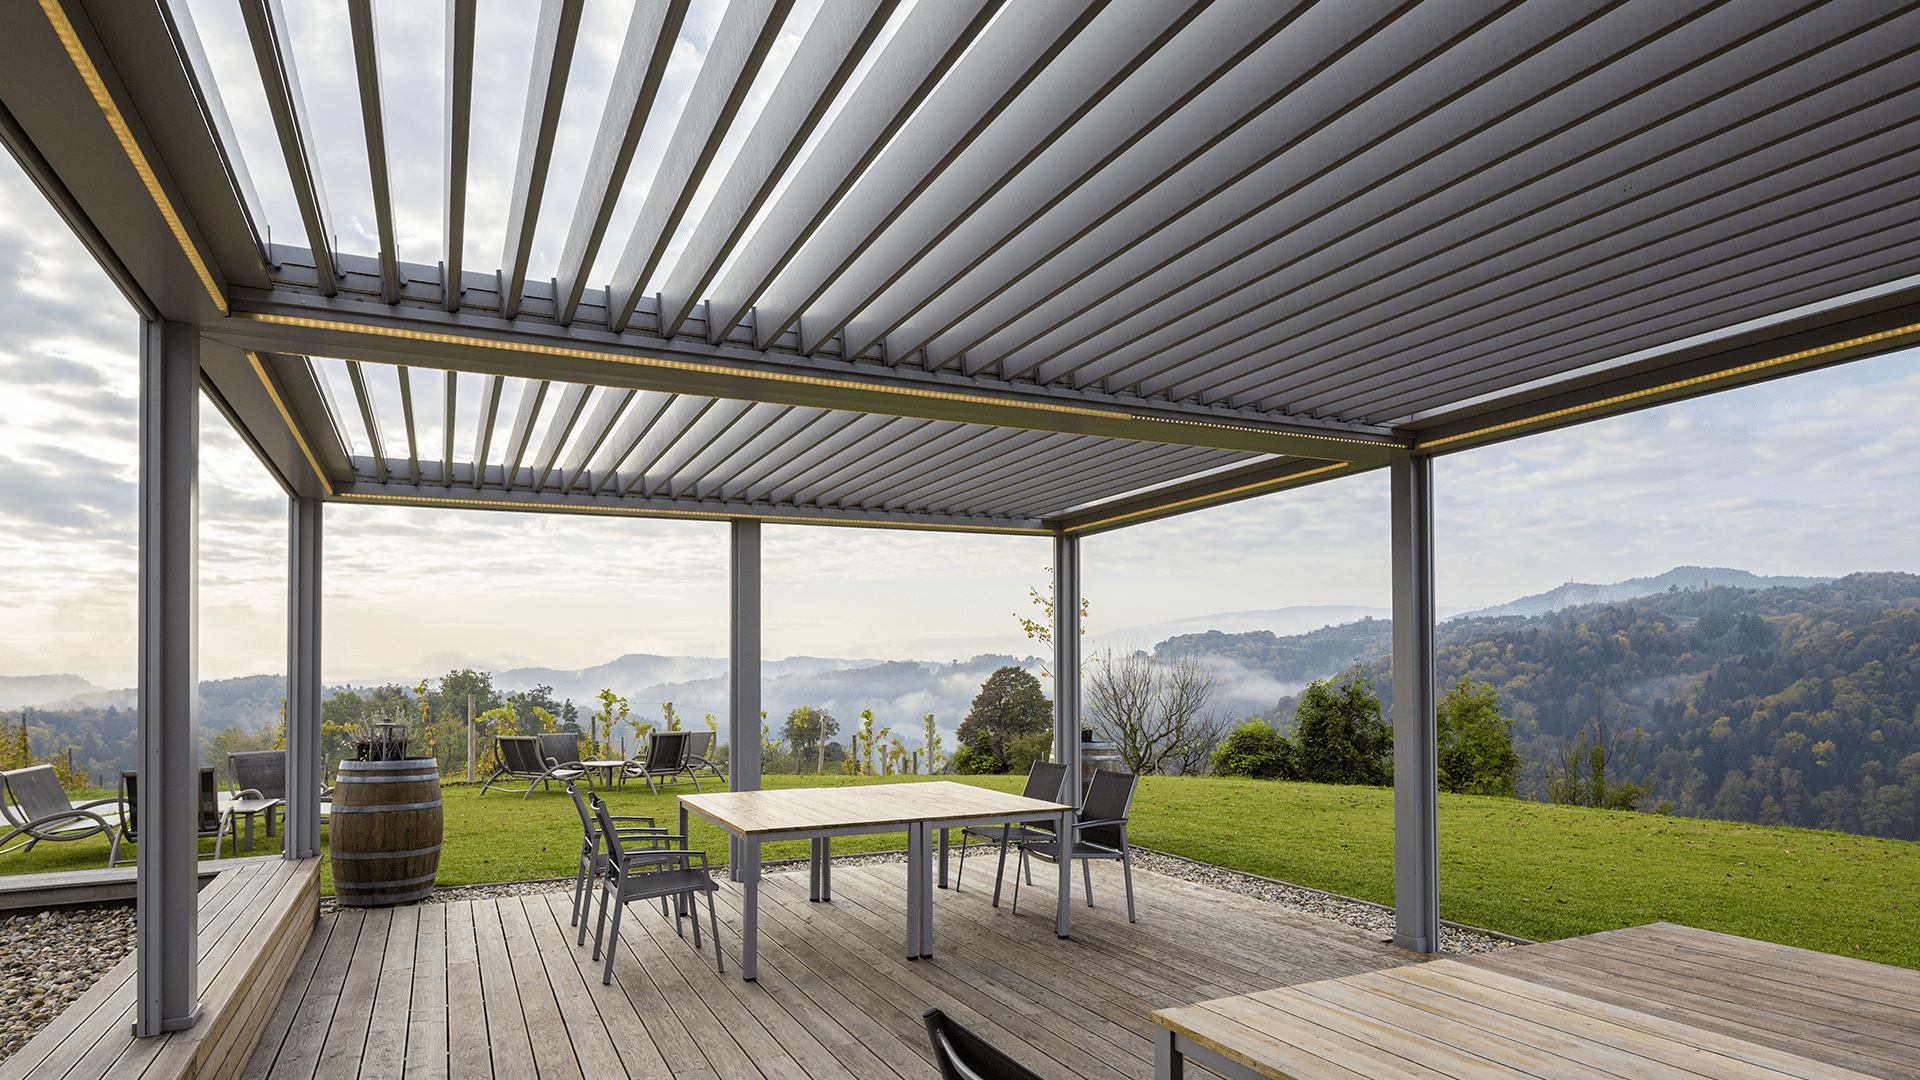 Hella präsentiert eine graue, beleuchtete Pergola-Terrassenüberdachung, darunter befinden sich Holztische und Stühle auf einem Holzboden, mit weiter Aussicht in di Berge.